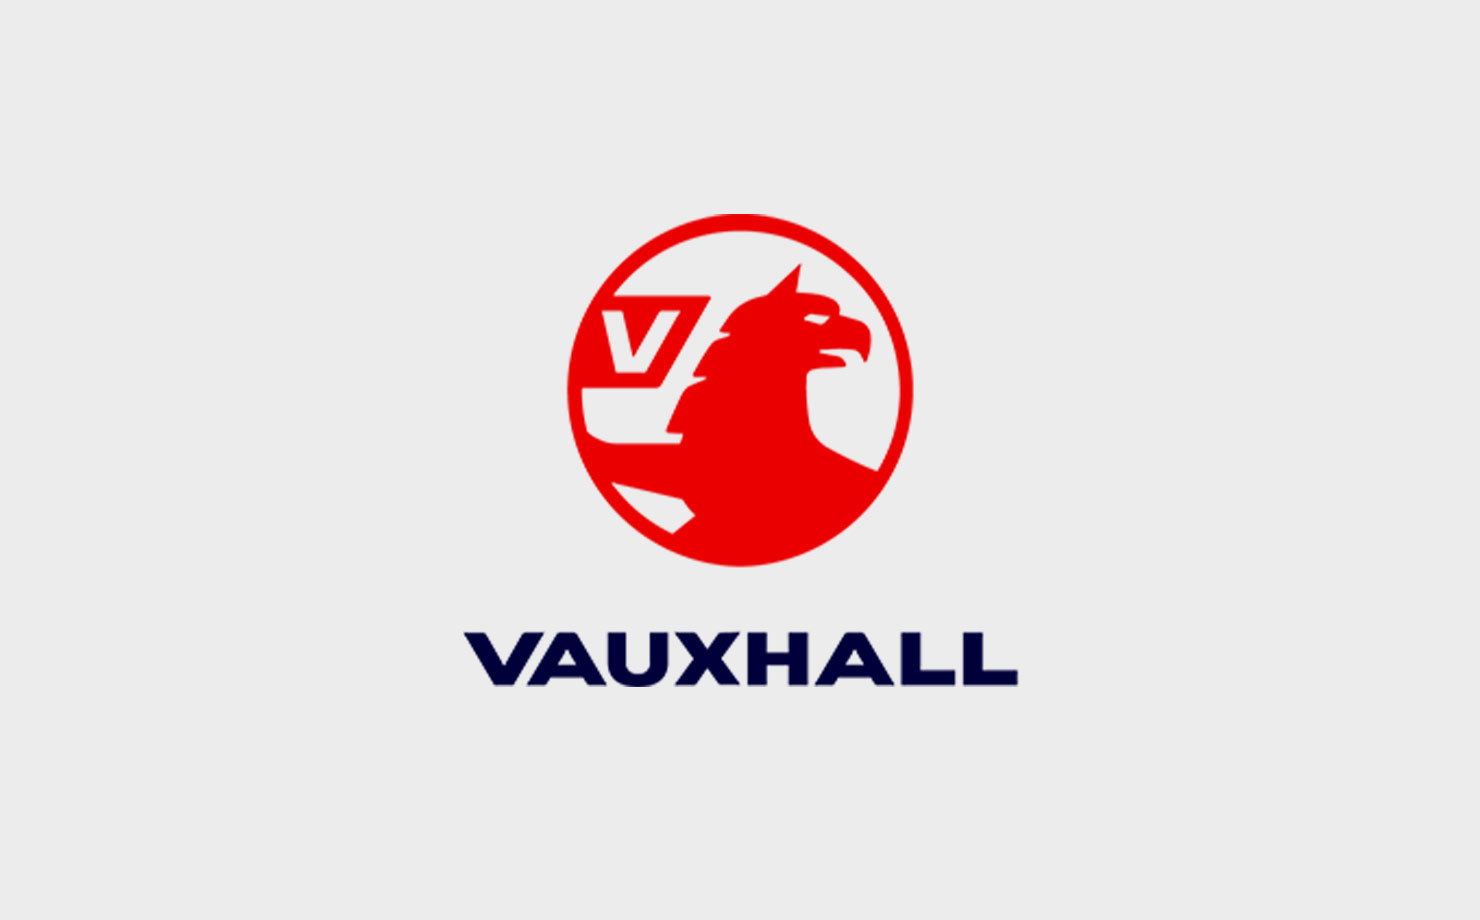 Image of Vauxhall logo